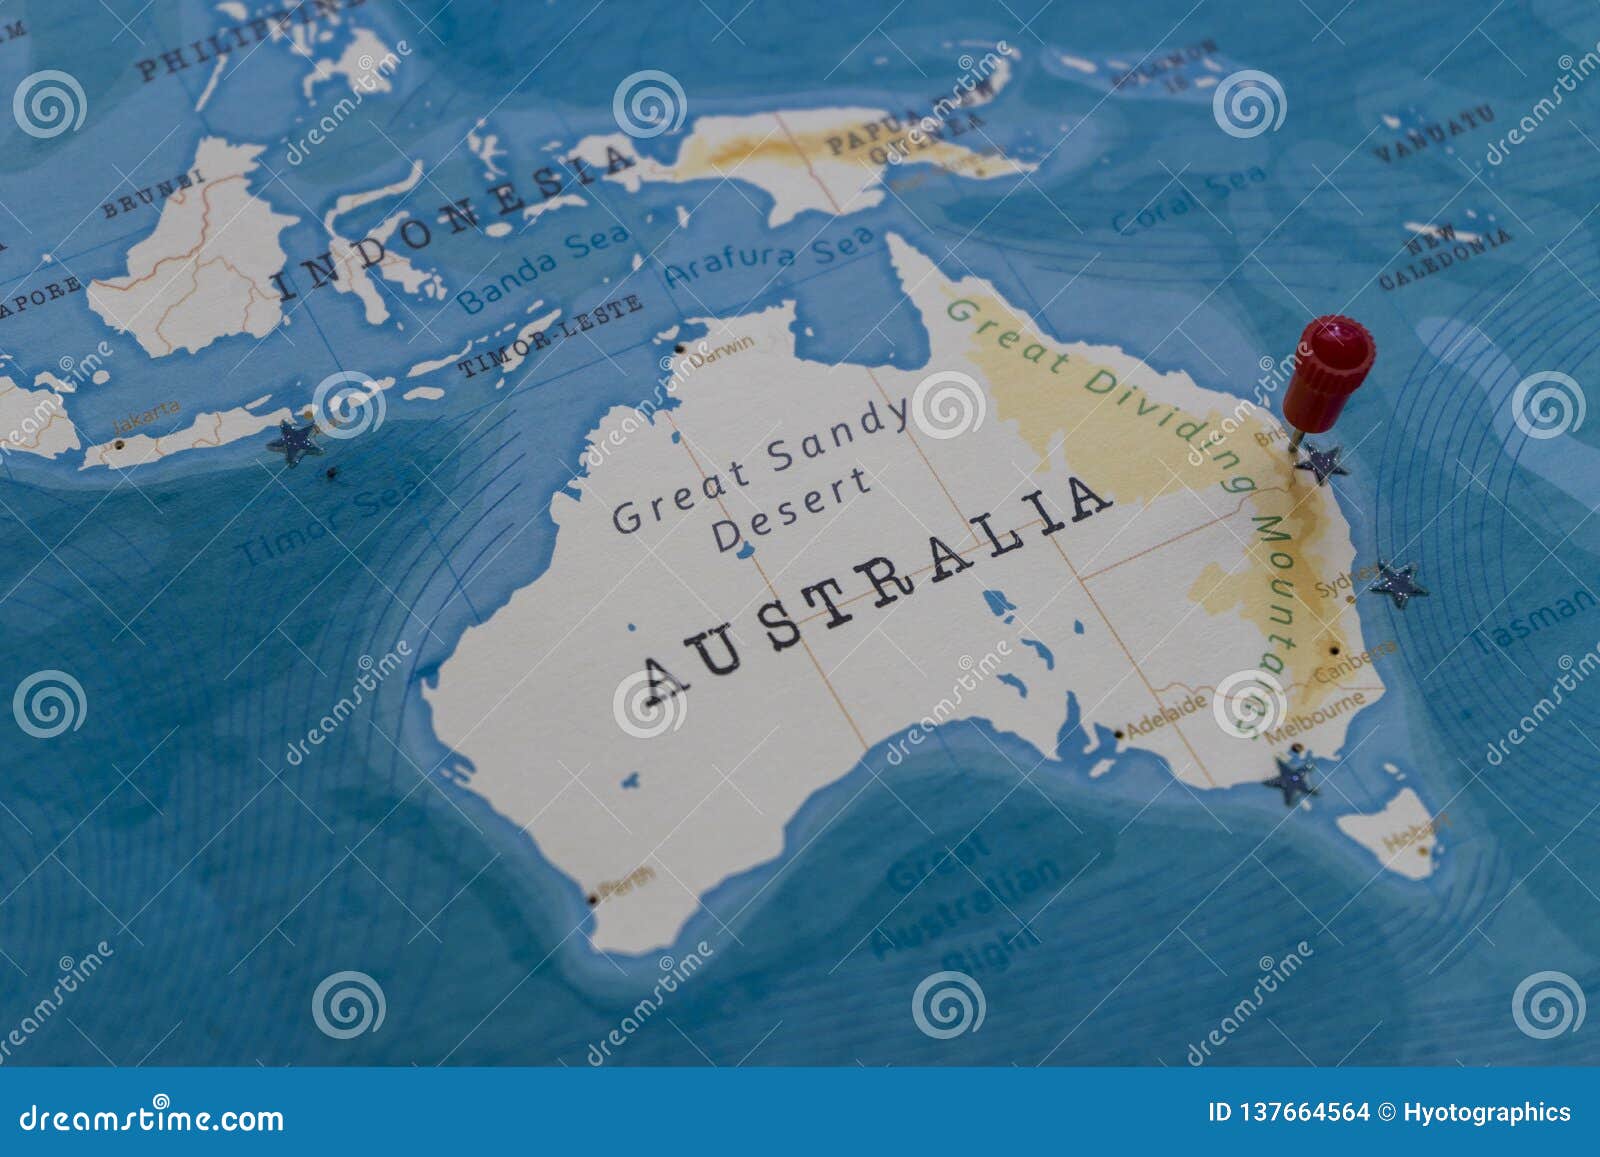 Карта земли австралии. Карта Австралии вверх ногами. Австралия закрытые земли. Brisbane on the World Map.